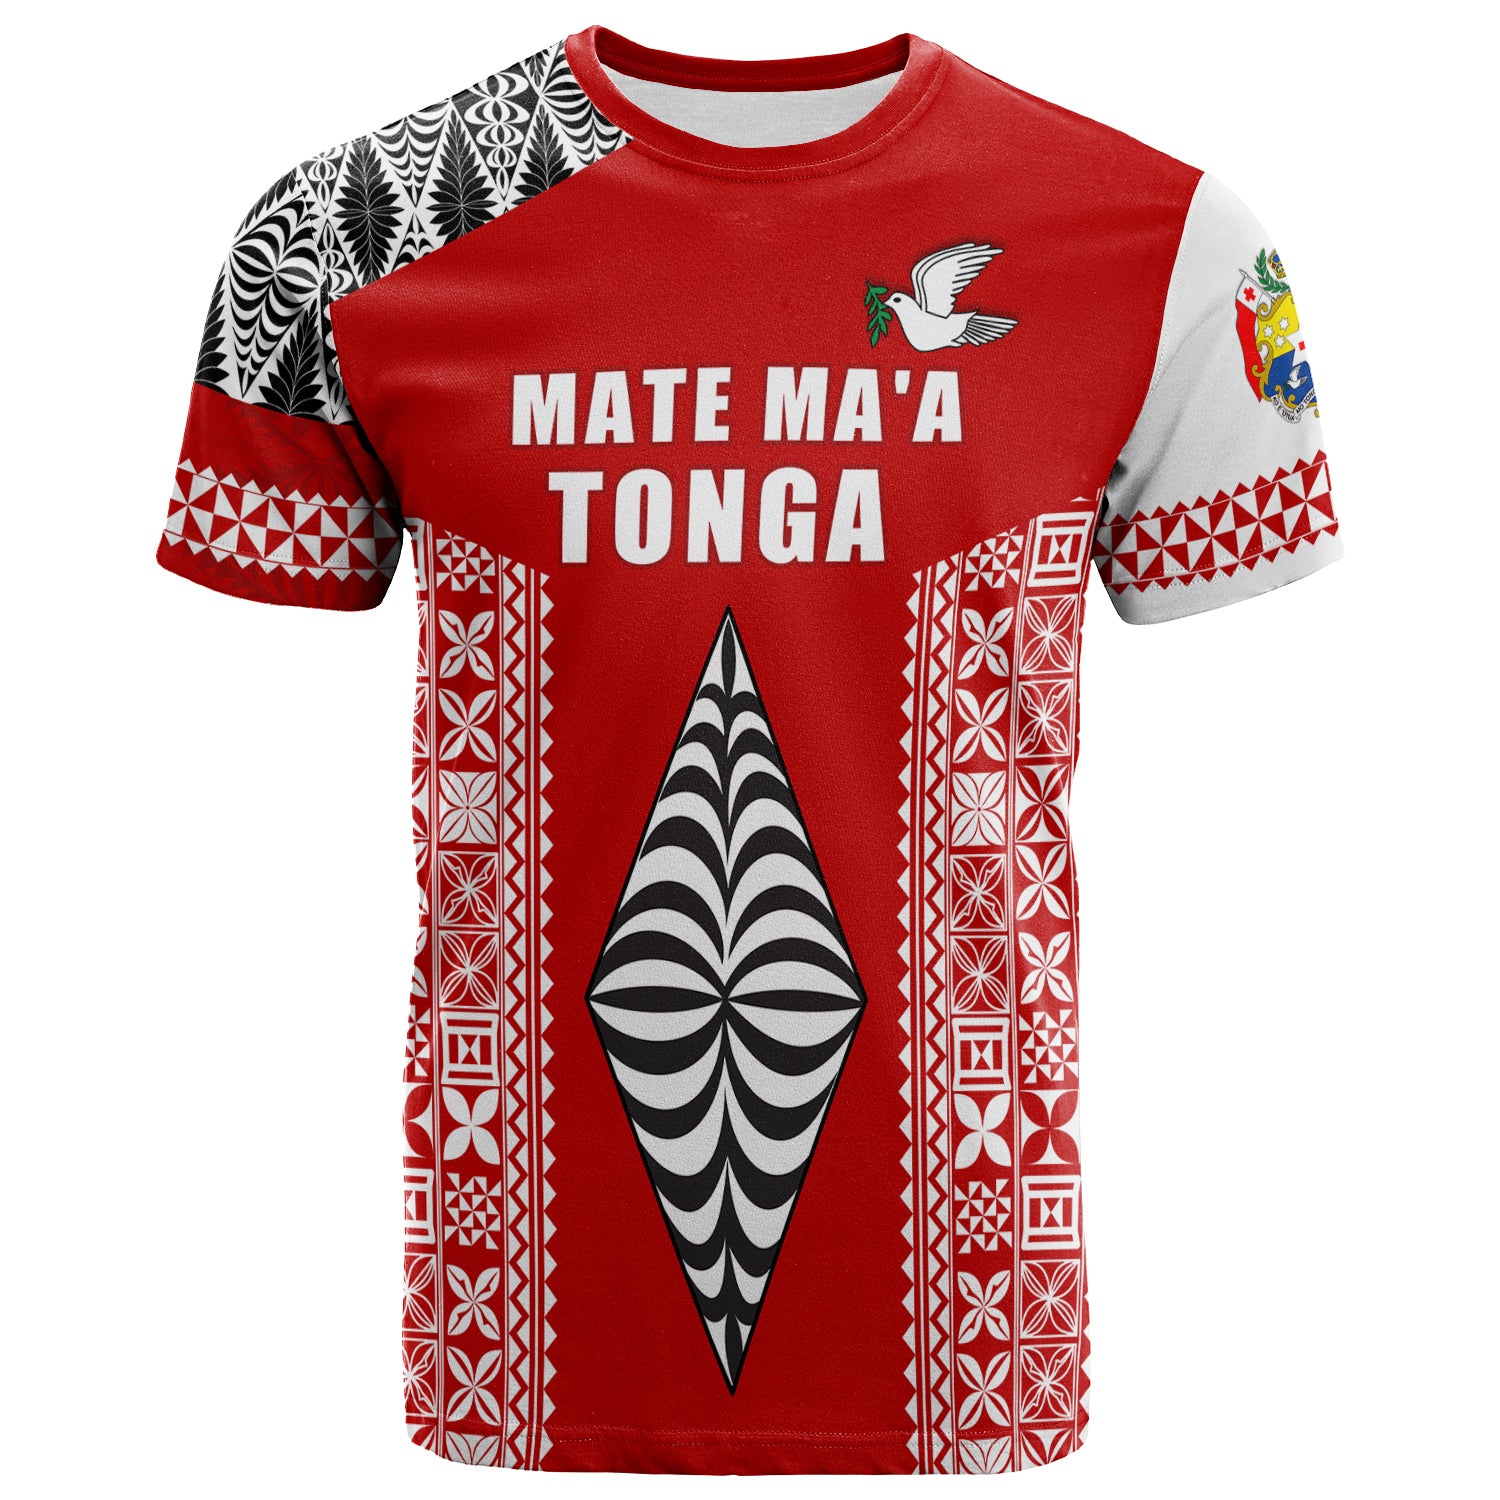 Tonga Rugby T Shirt Mate Maa Tonga LT13 Unisex Red - Polynesian Pride